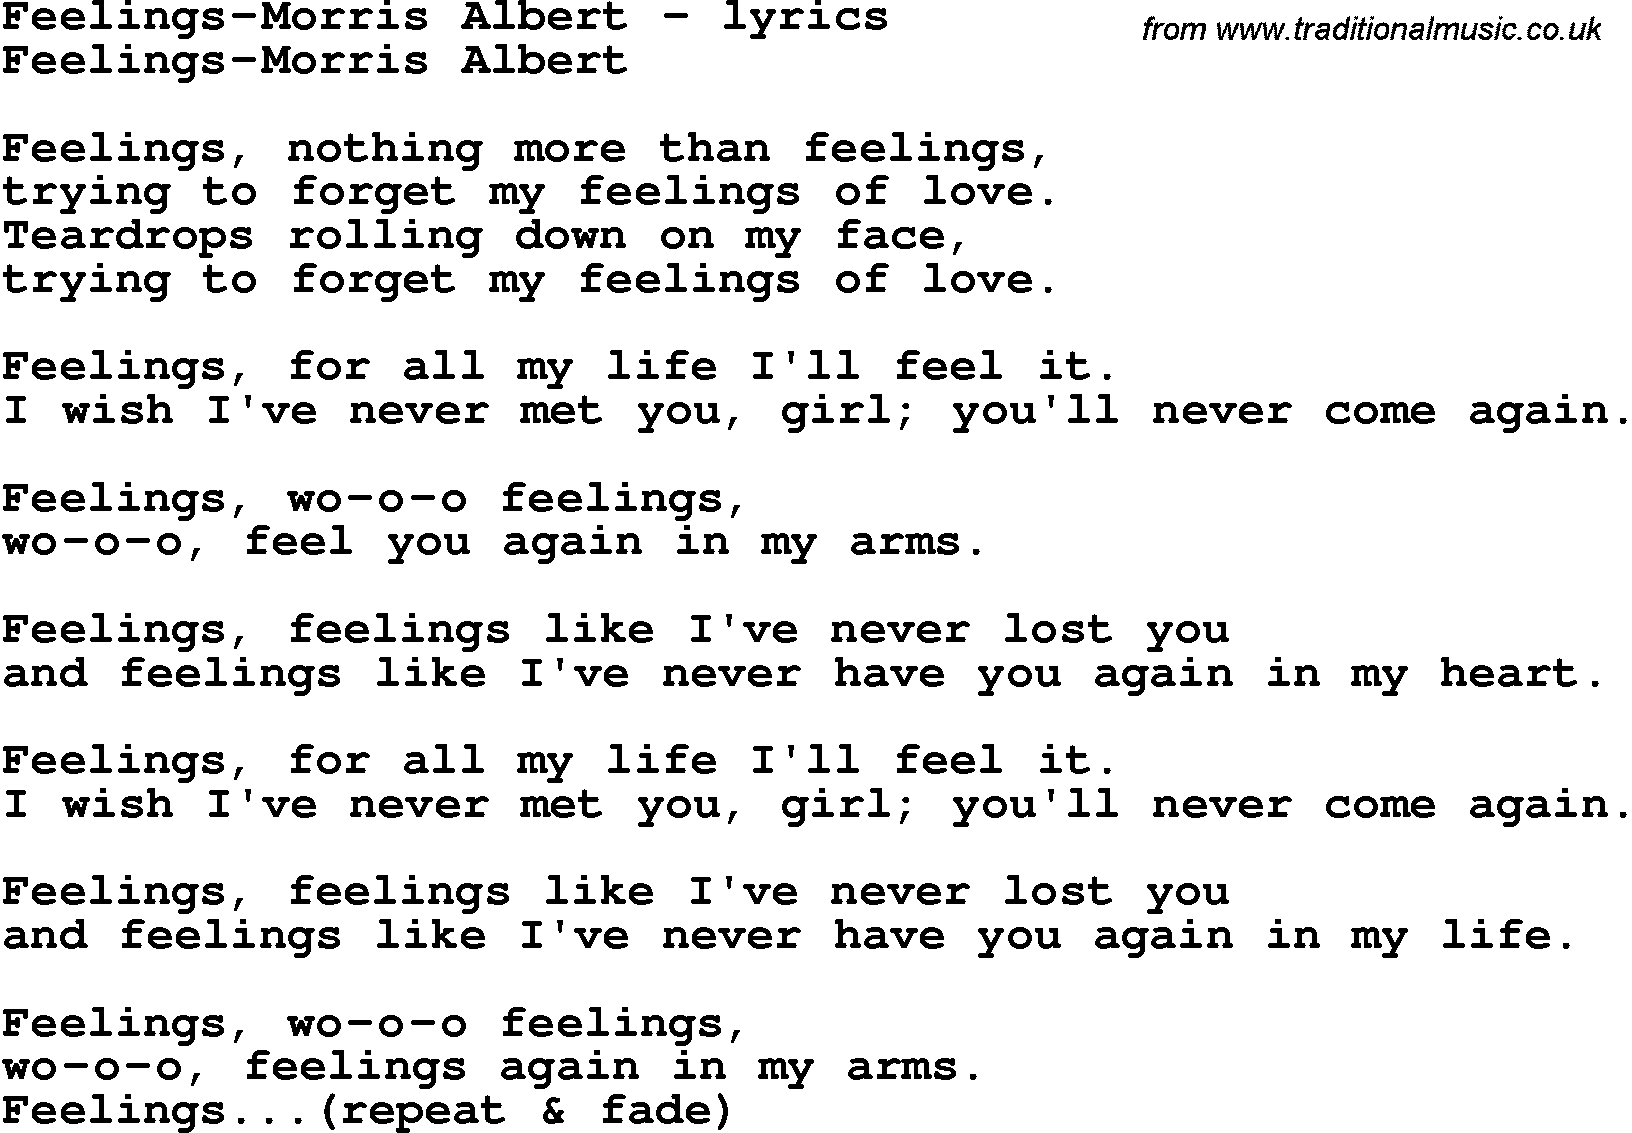 Love Song Lyrics for: Feelings-Morris Albert